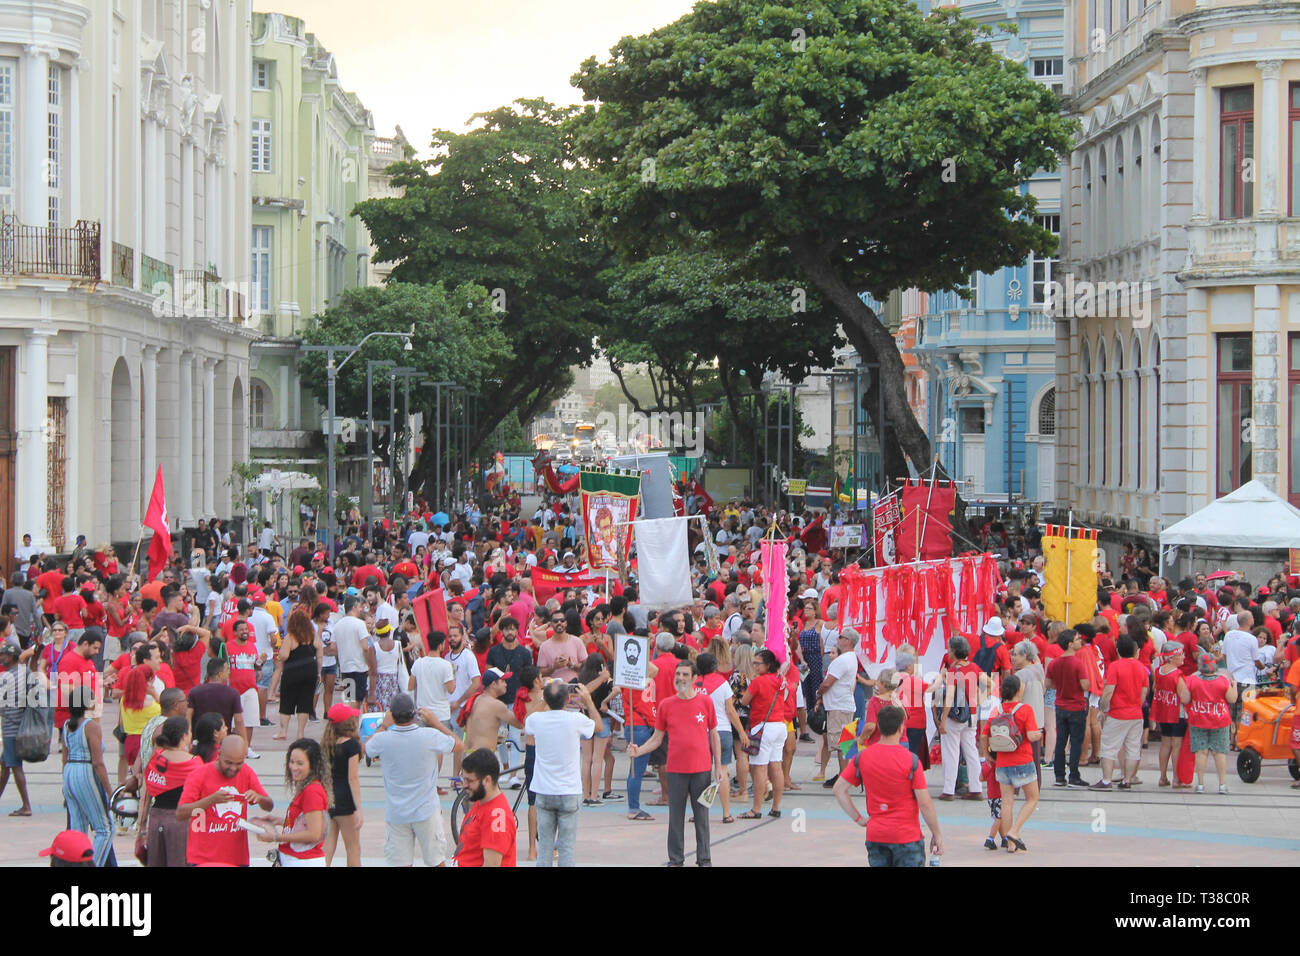 RECIFE, PE - 07.04.2019 : JORNADA LULA LIVRE NO RECIFE - Loi intitulée "Jda Lul Lula Livre de Recife, qui a eu lieu en faveur de la liberté de l'ancien Président Lula qui complète cette Apr, une année d'persecrsecution politique selon les militants qui appellent également à la poursuite de la lutte pour la démocratie, la justice. La loi prend place dans l'Arsenal de la place de la Marine, dans le quartier de Recife, également connu comme le "Vieux Recife" au début de la loi était à 15h00 entre le carnaval de fréquentations ; attrans ; blocs de ciranda, Ma, Maracatu Rural, parmi de nombreuses autres attractions. (Ph Banque D'Images